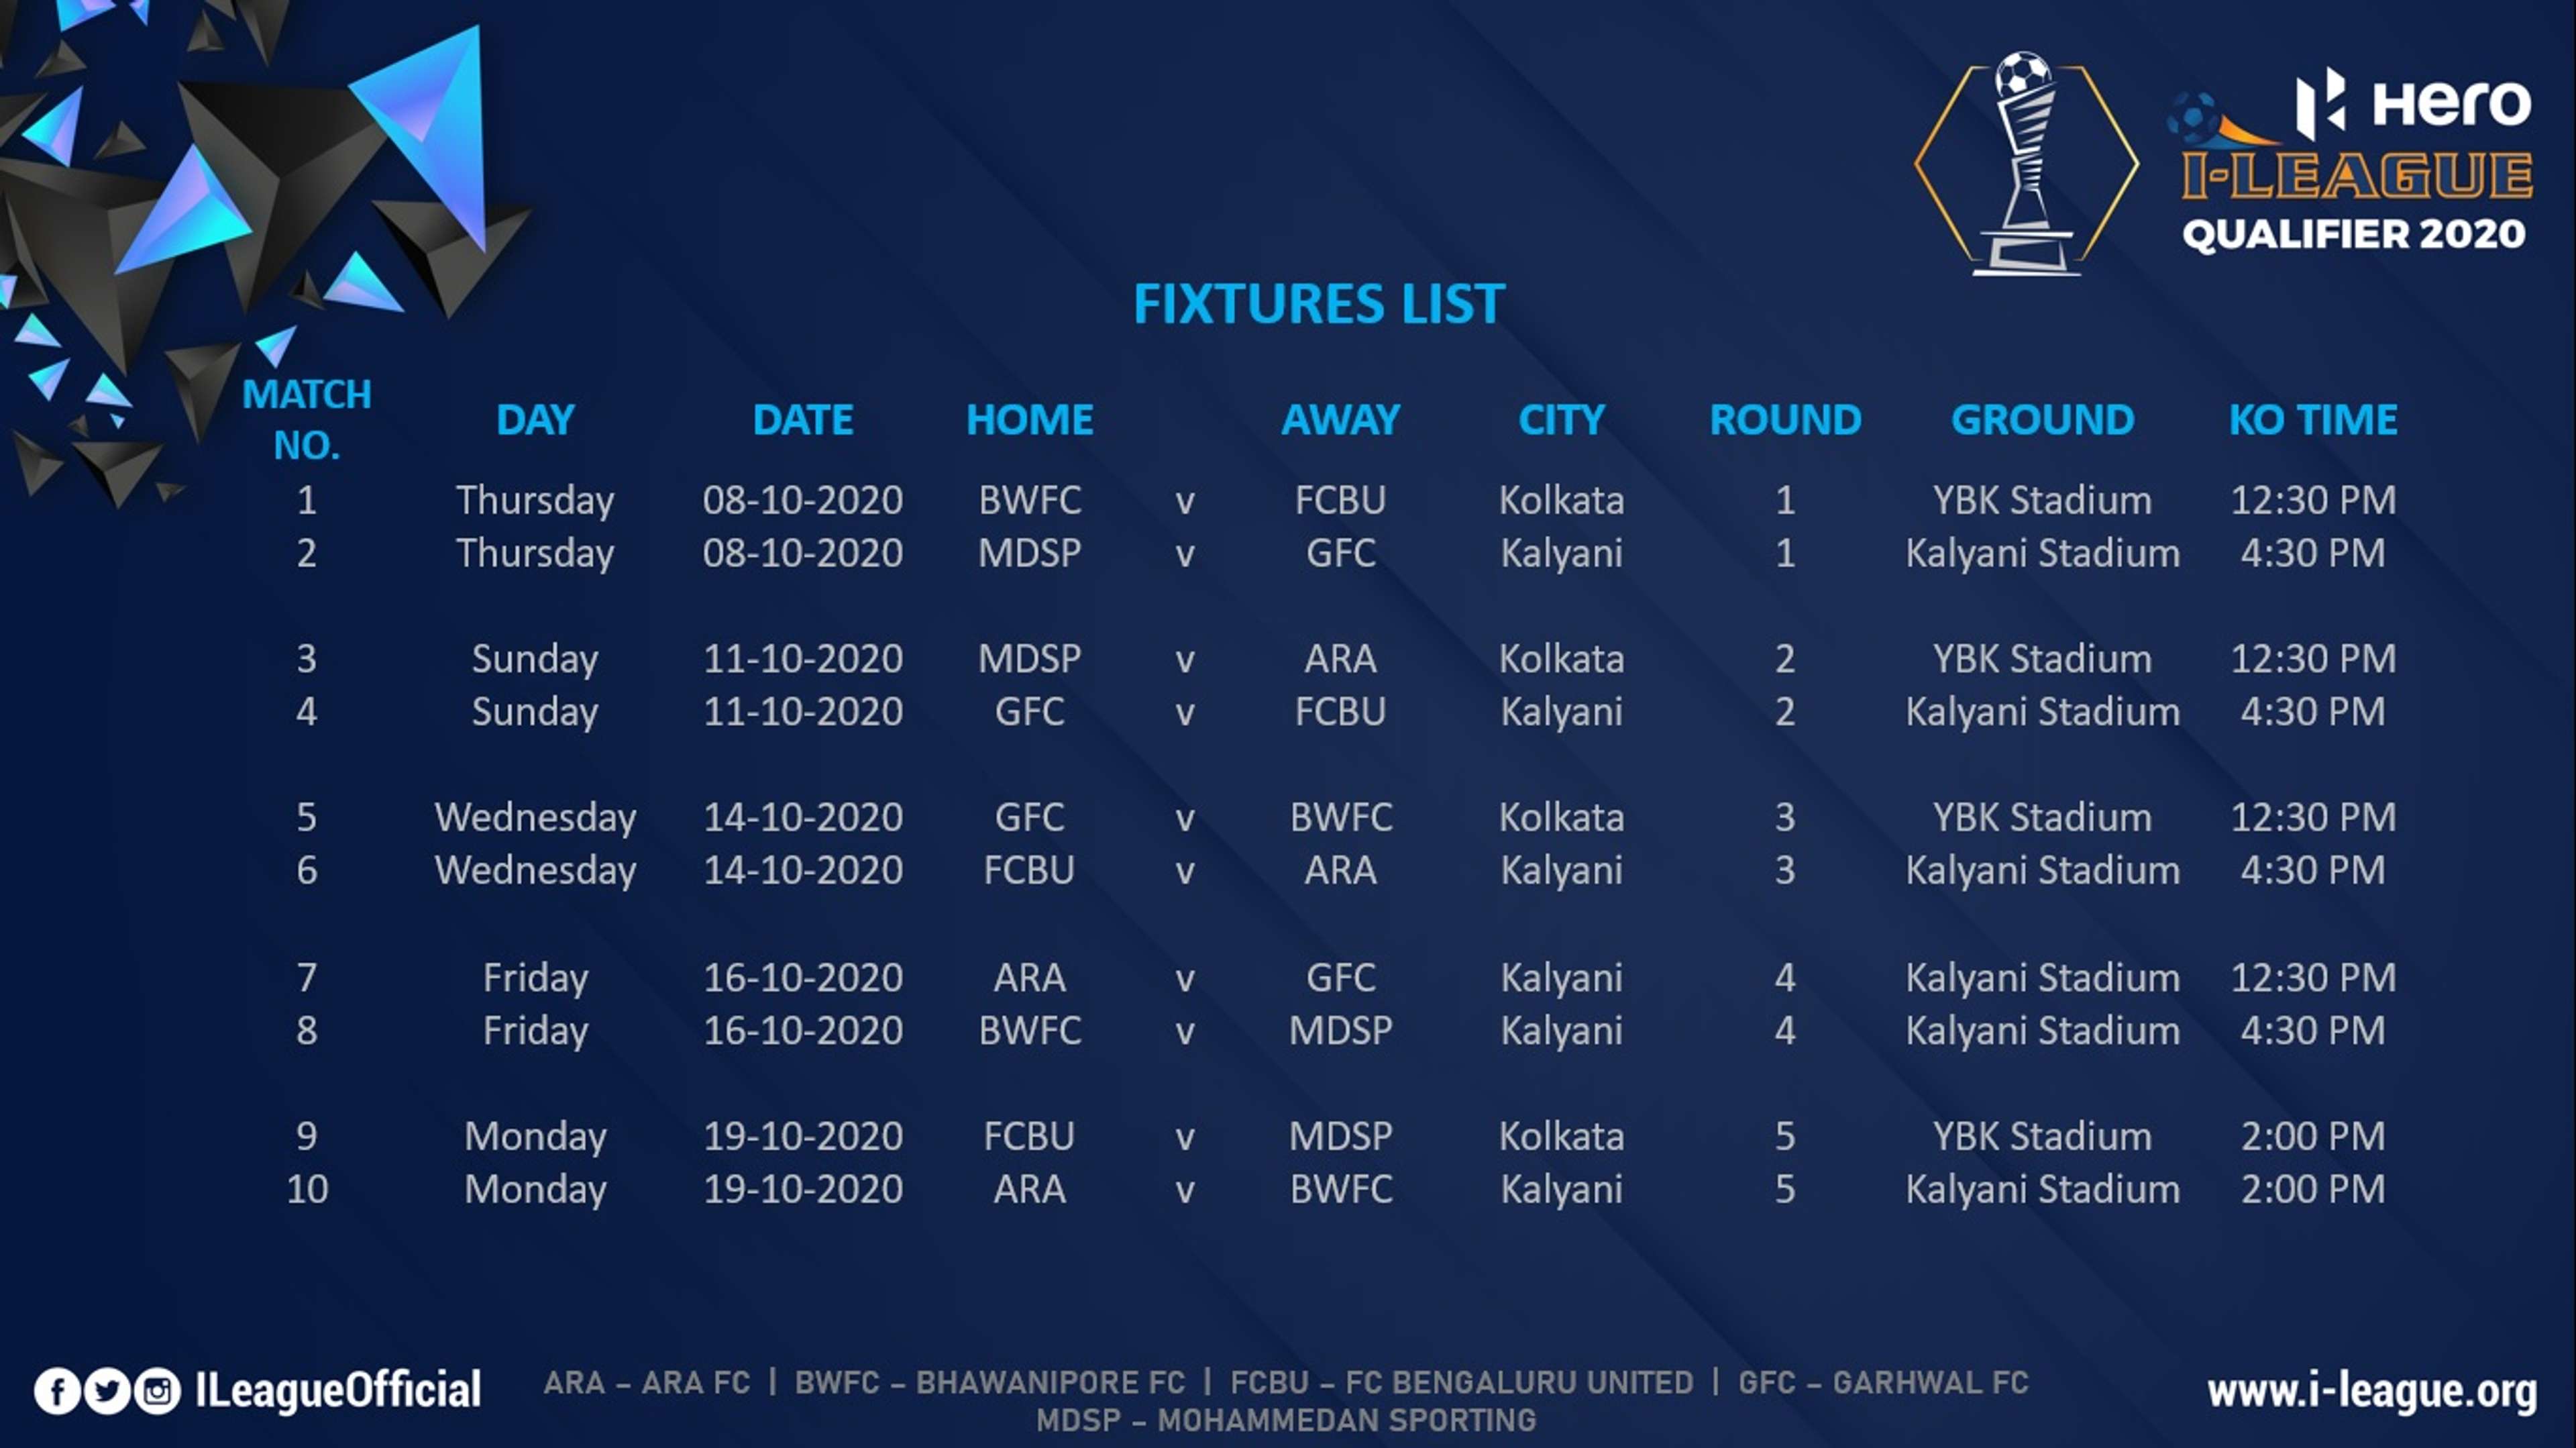 I-League fixtures list qualifiers